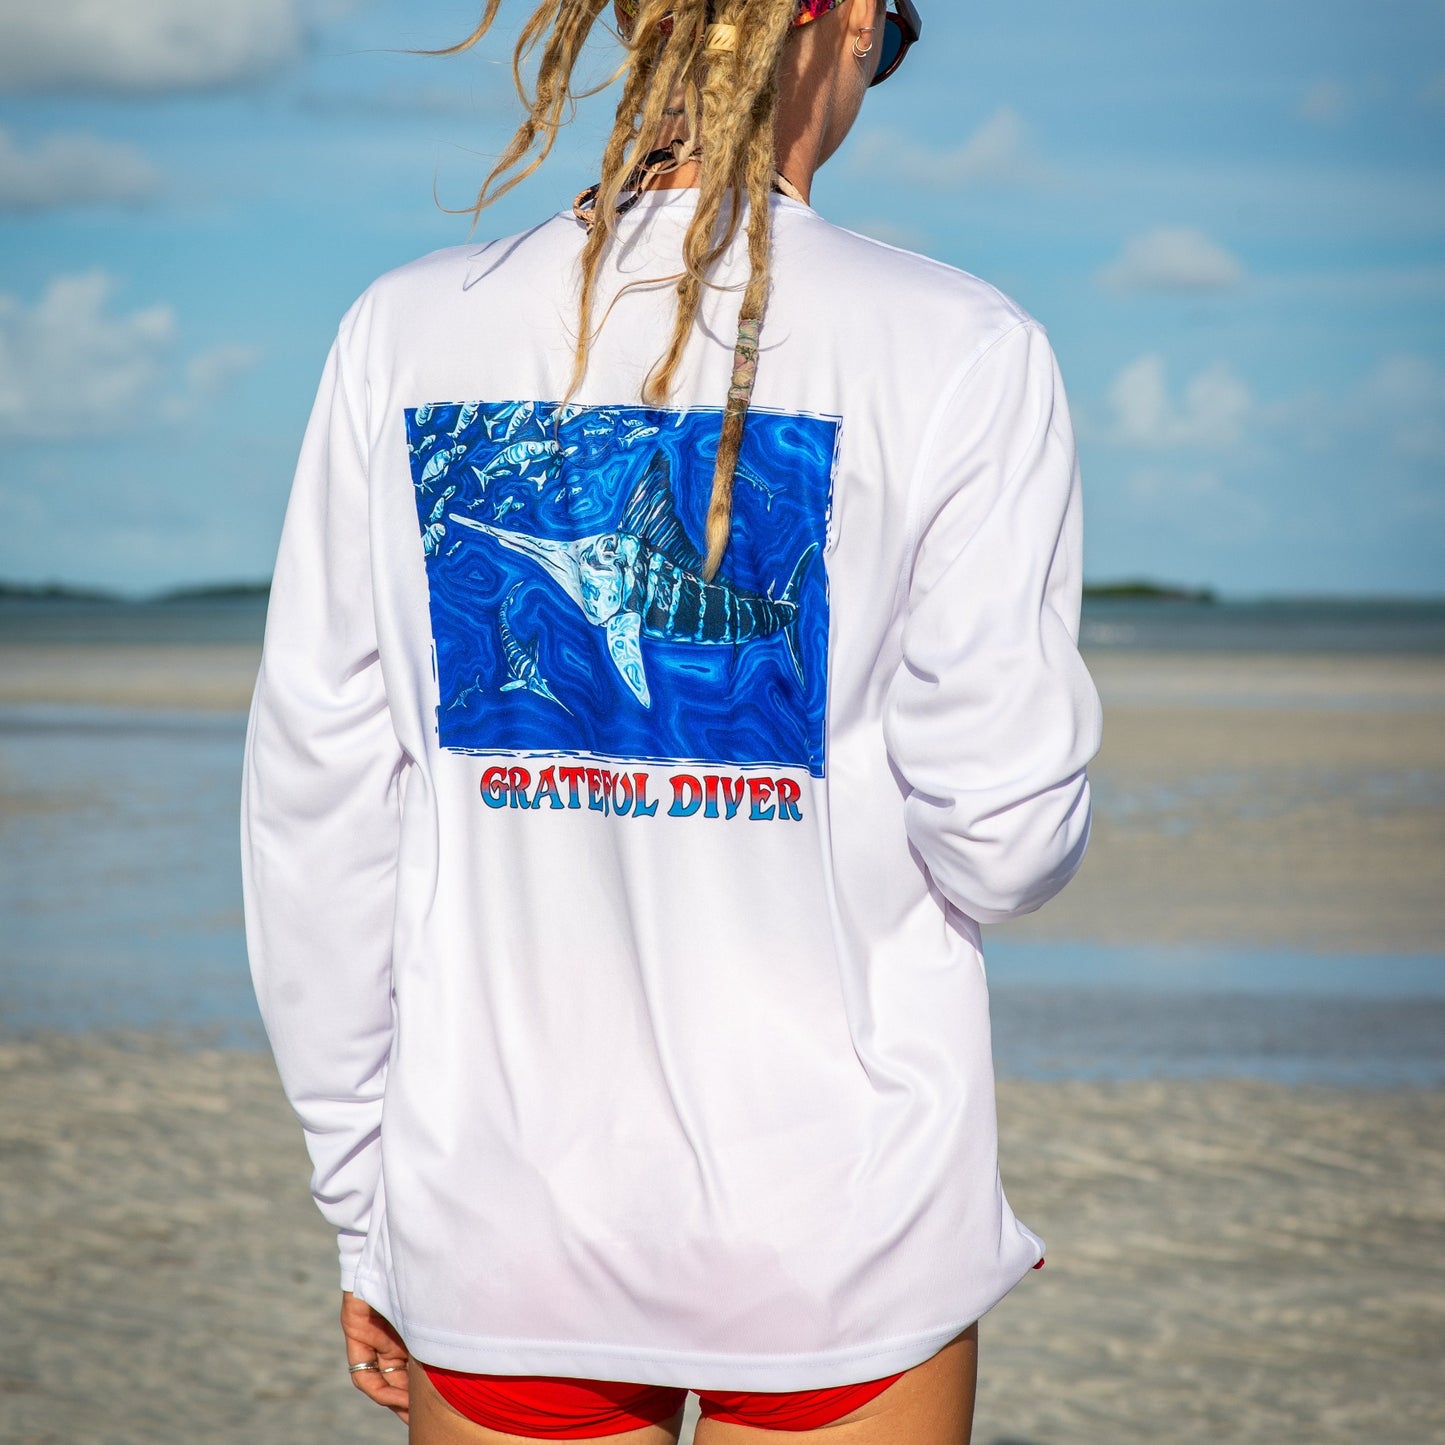 Grateful Diver Artist's Collection by Irina Pushkareva: Source of Light UV Shirt in white back shot on model on sandbar